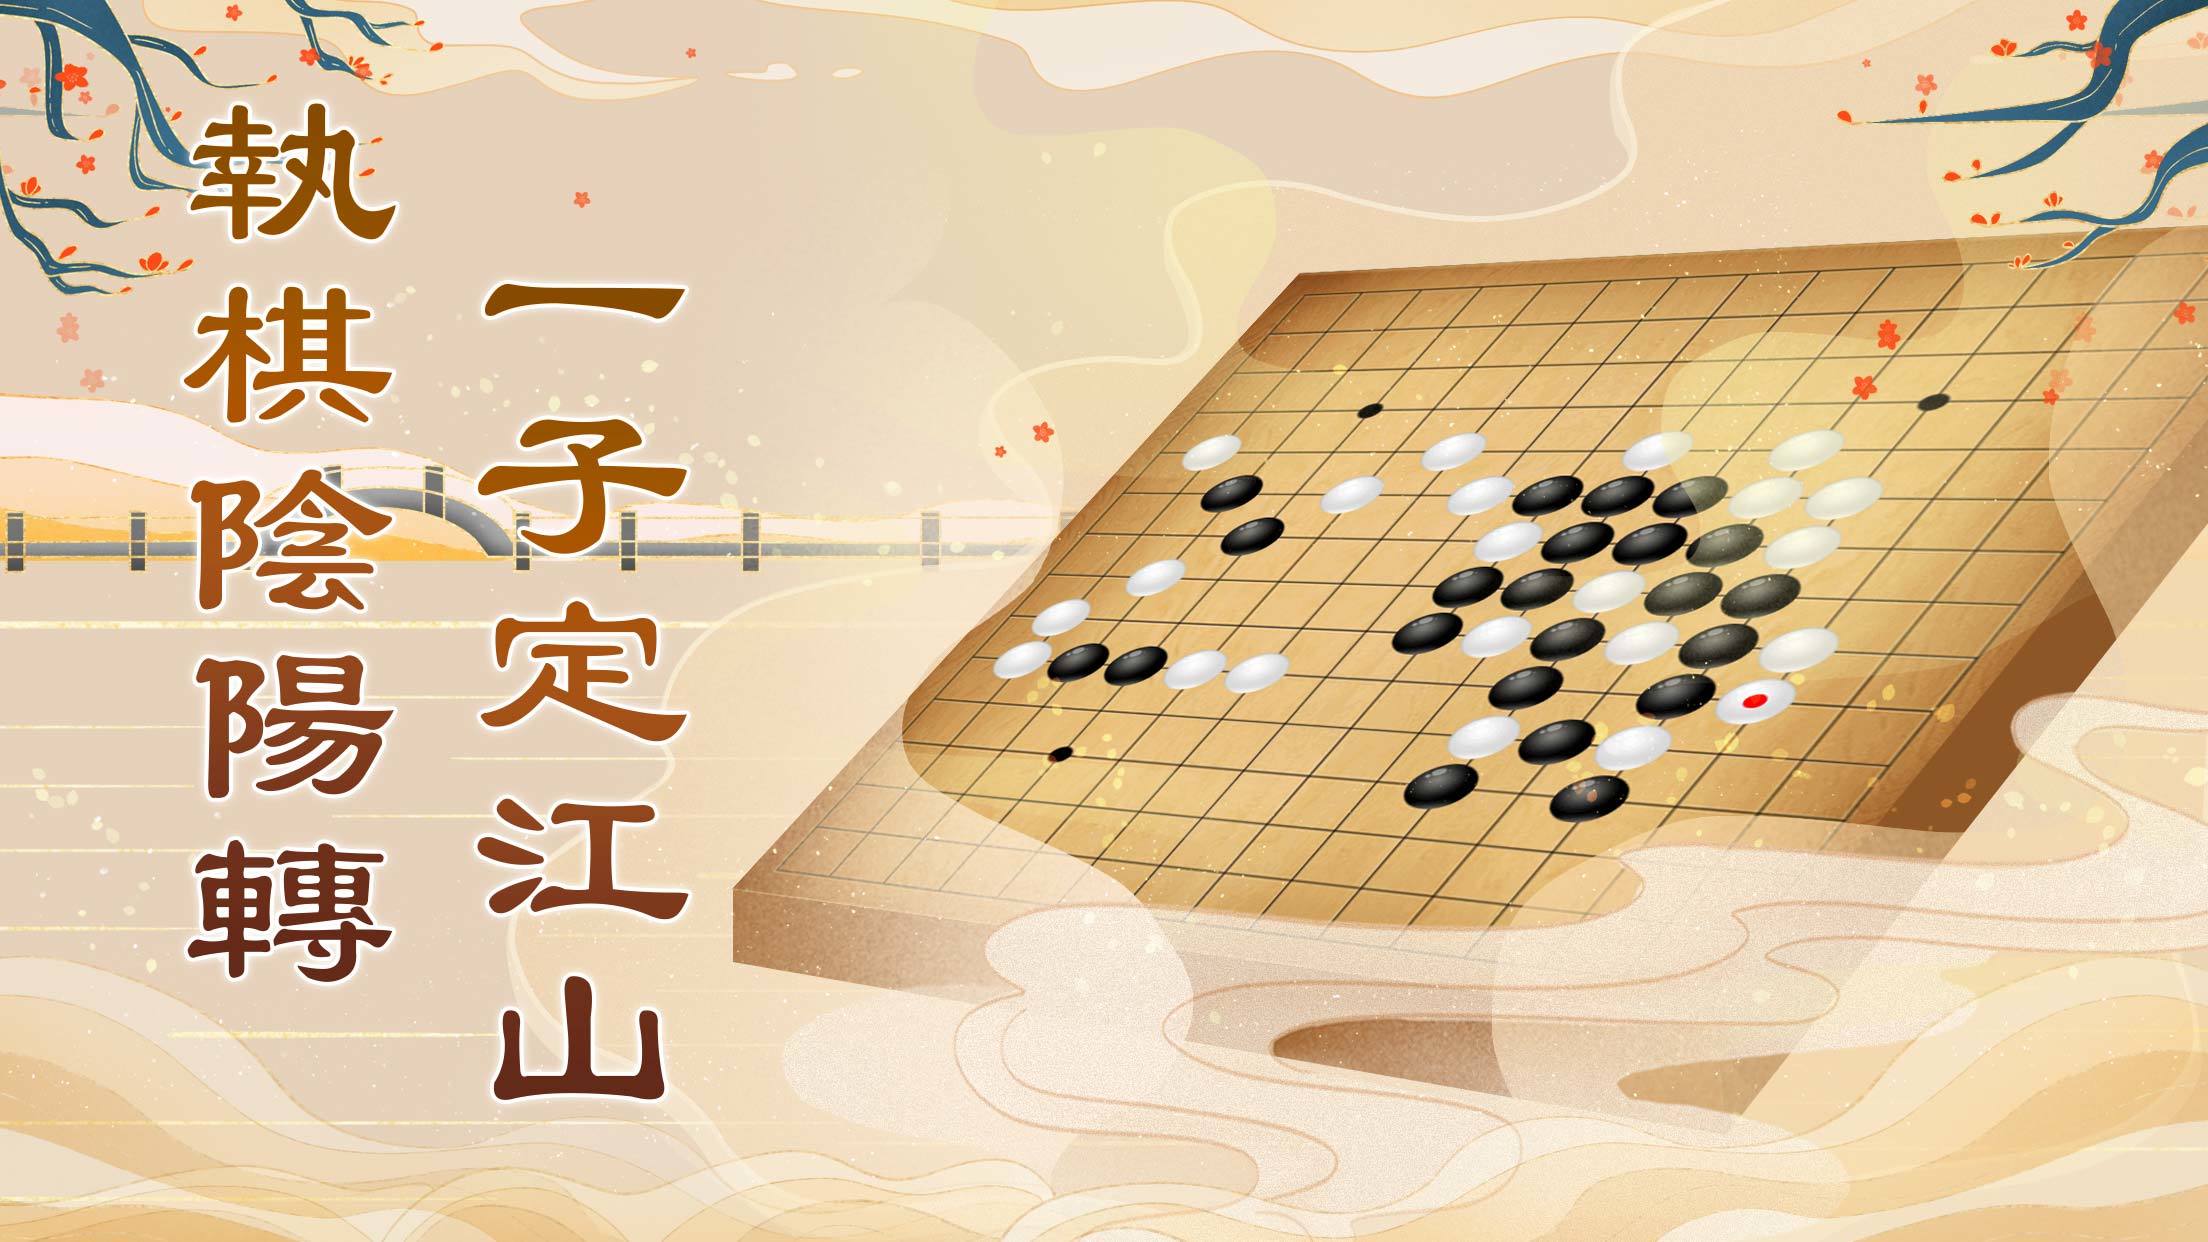 Chinese Go Gobang Renju Fünf Gewinnt Spiel 110 Magnetic Stones Kid Puzzle Game 